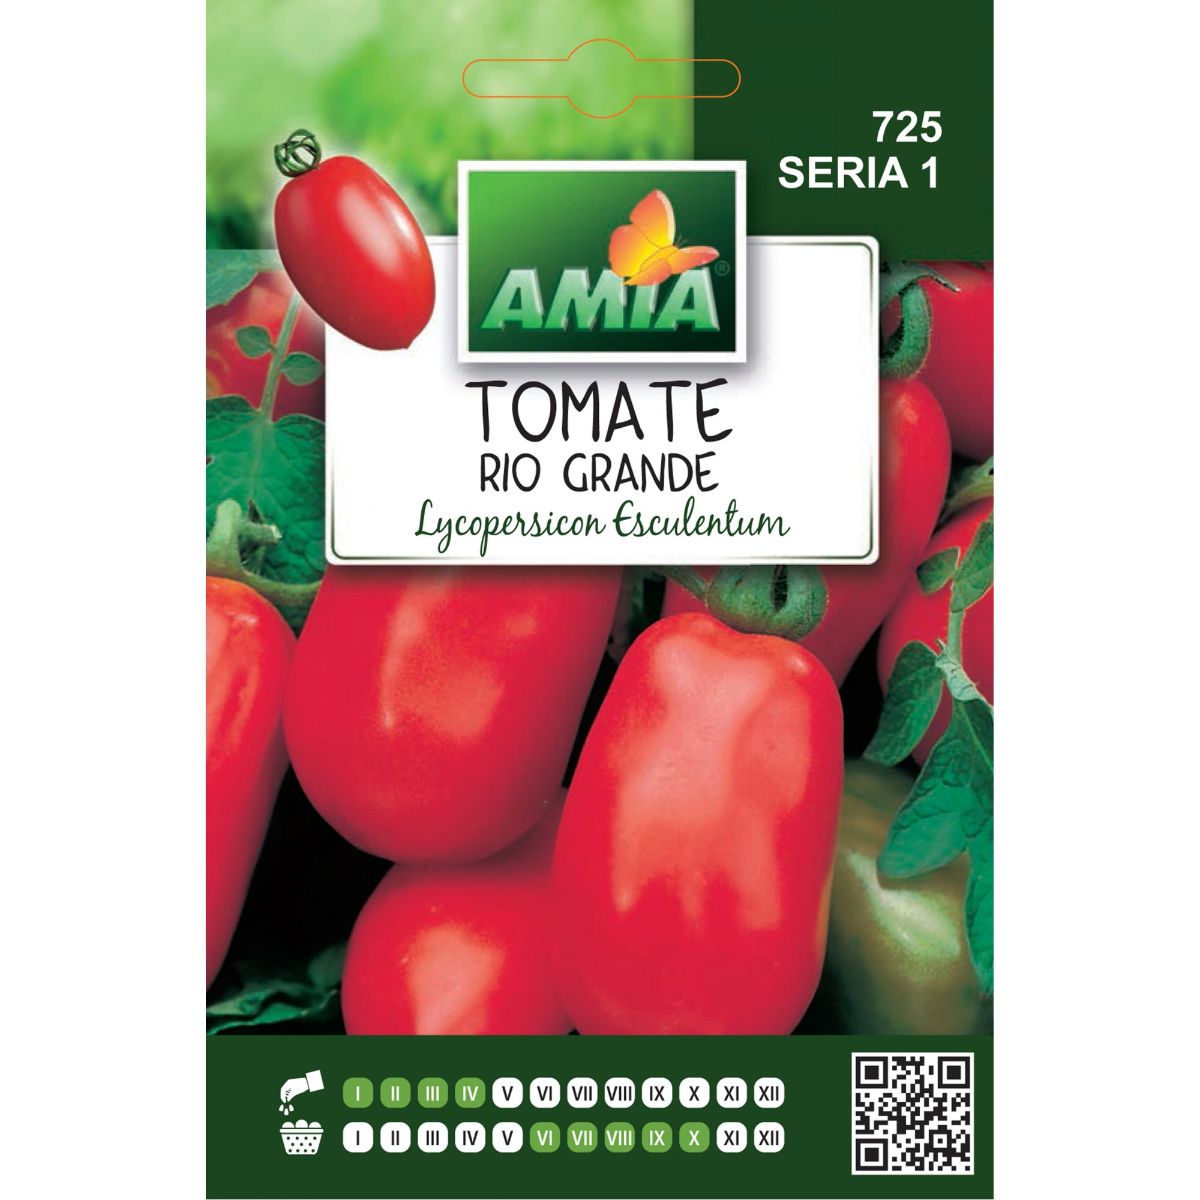 Tomate - Seminte Tomate RIO GRANDE A AMIA 1gr, hectarul.ro